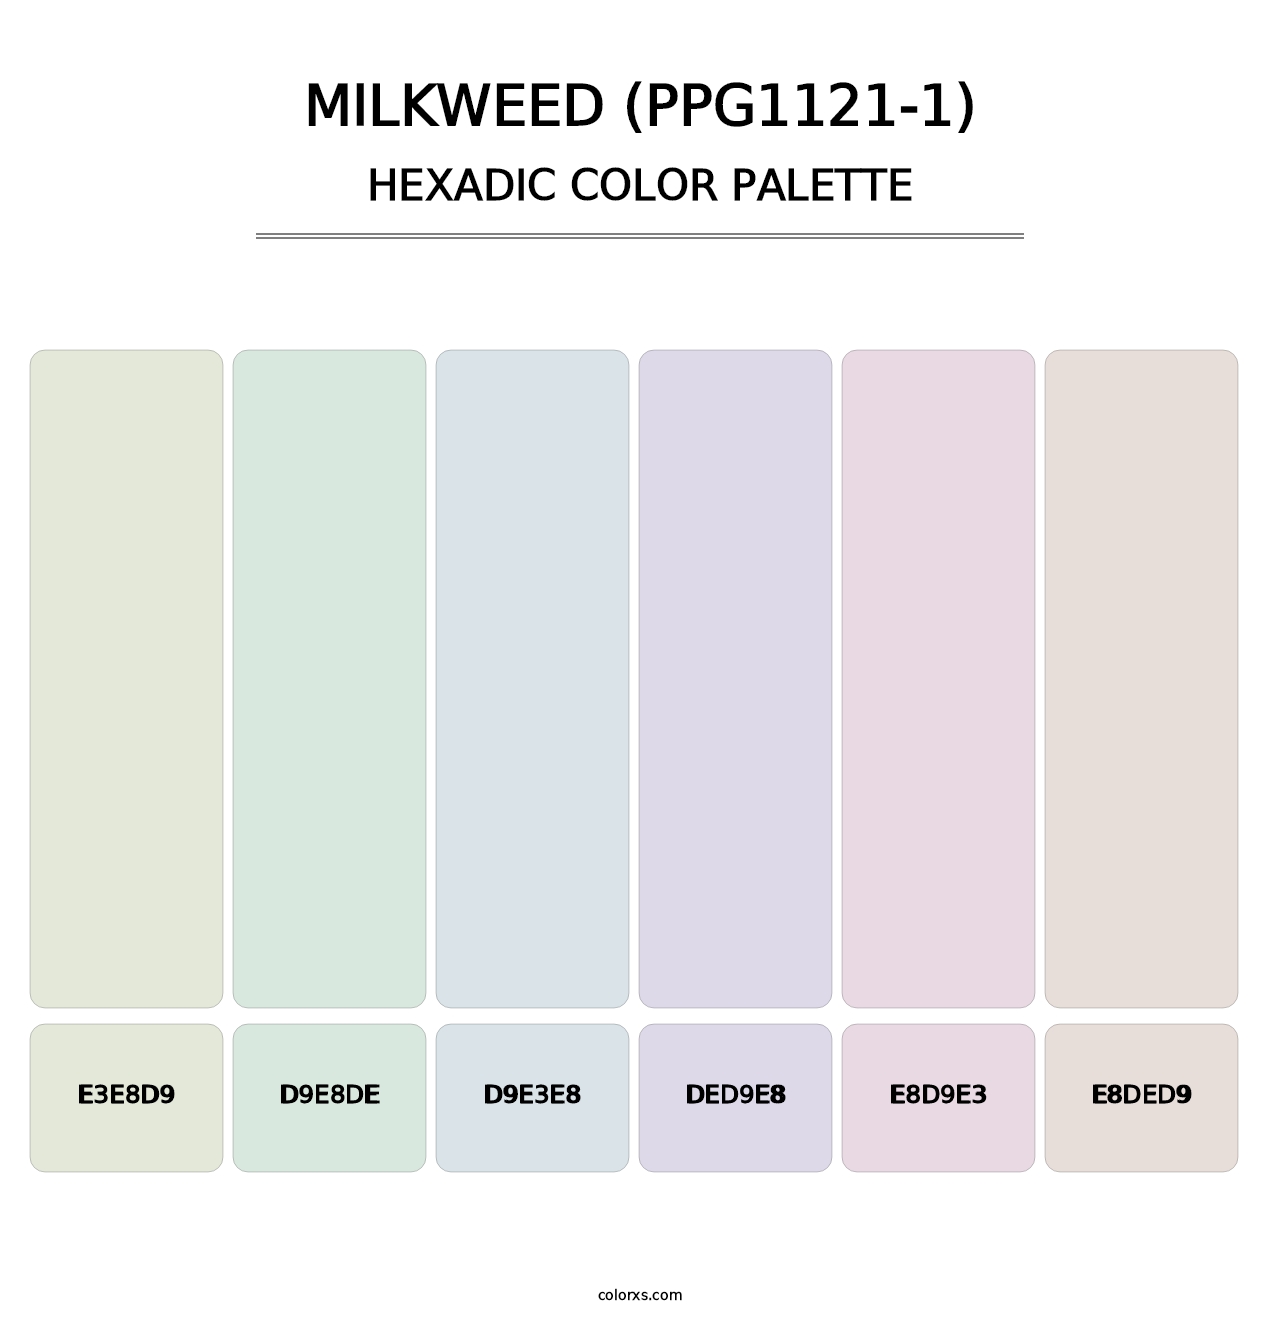 Milkweed (PPG1121-1) - Hexadic Color Palette